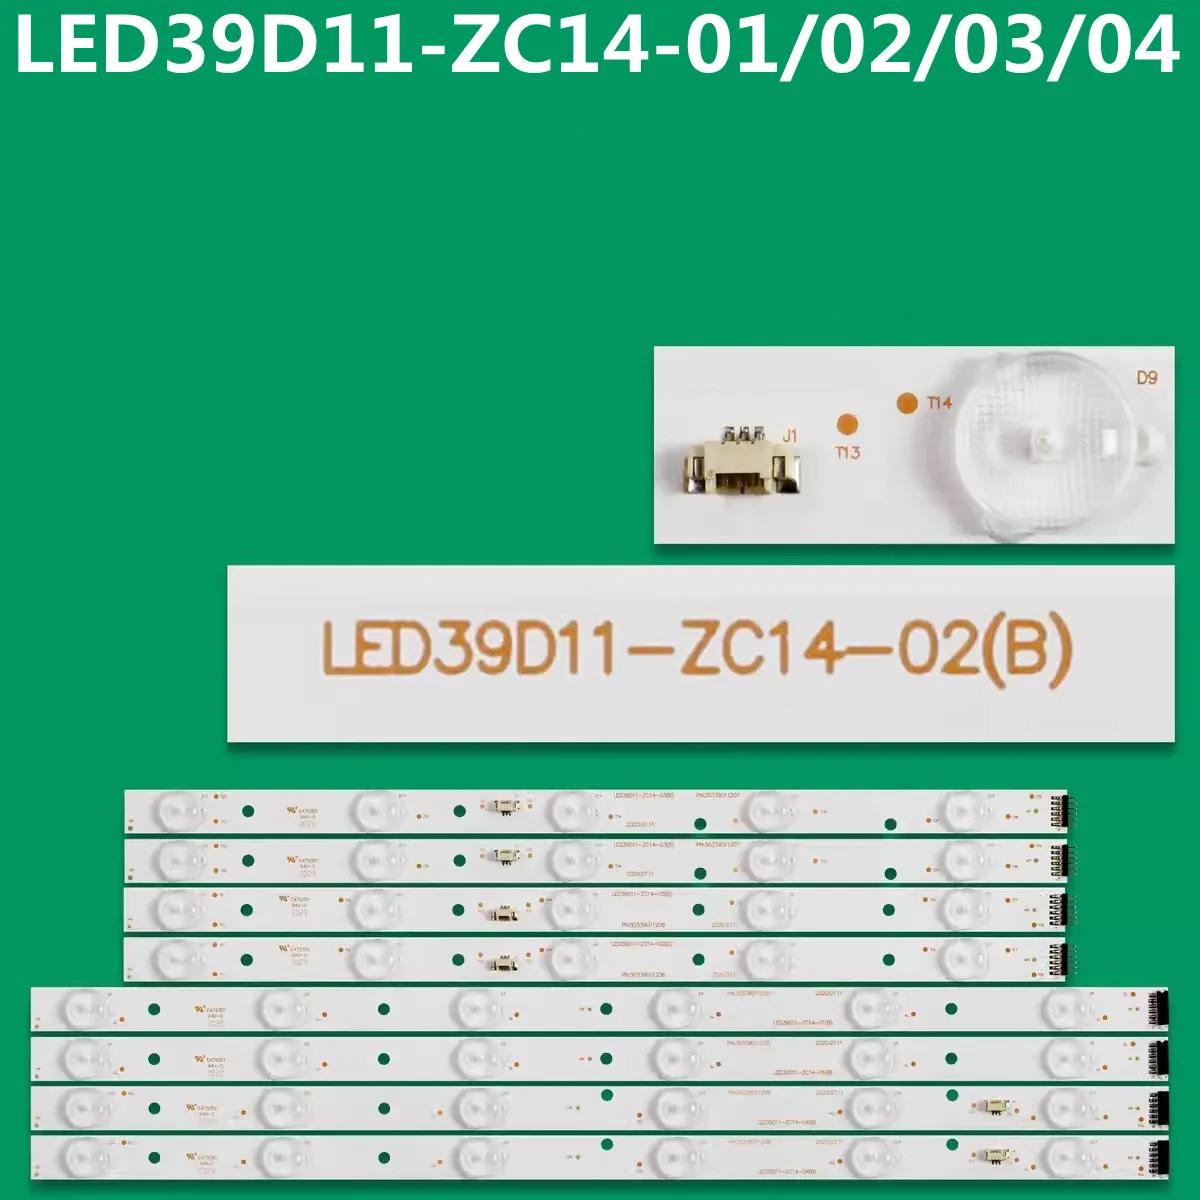 LED Ʈ Ʈ LED39D11-ZC14-01 LED39D11-ZC14-02 03 04, LD39U3000 39DU3000 LE39PUV3 LE39PW3 LE39MXF5 LE39MXF6 LE39M600